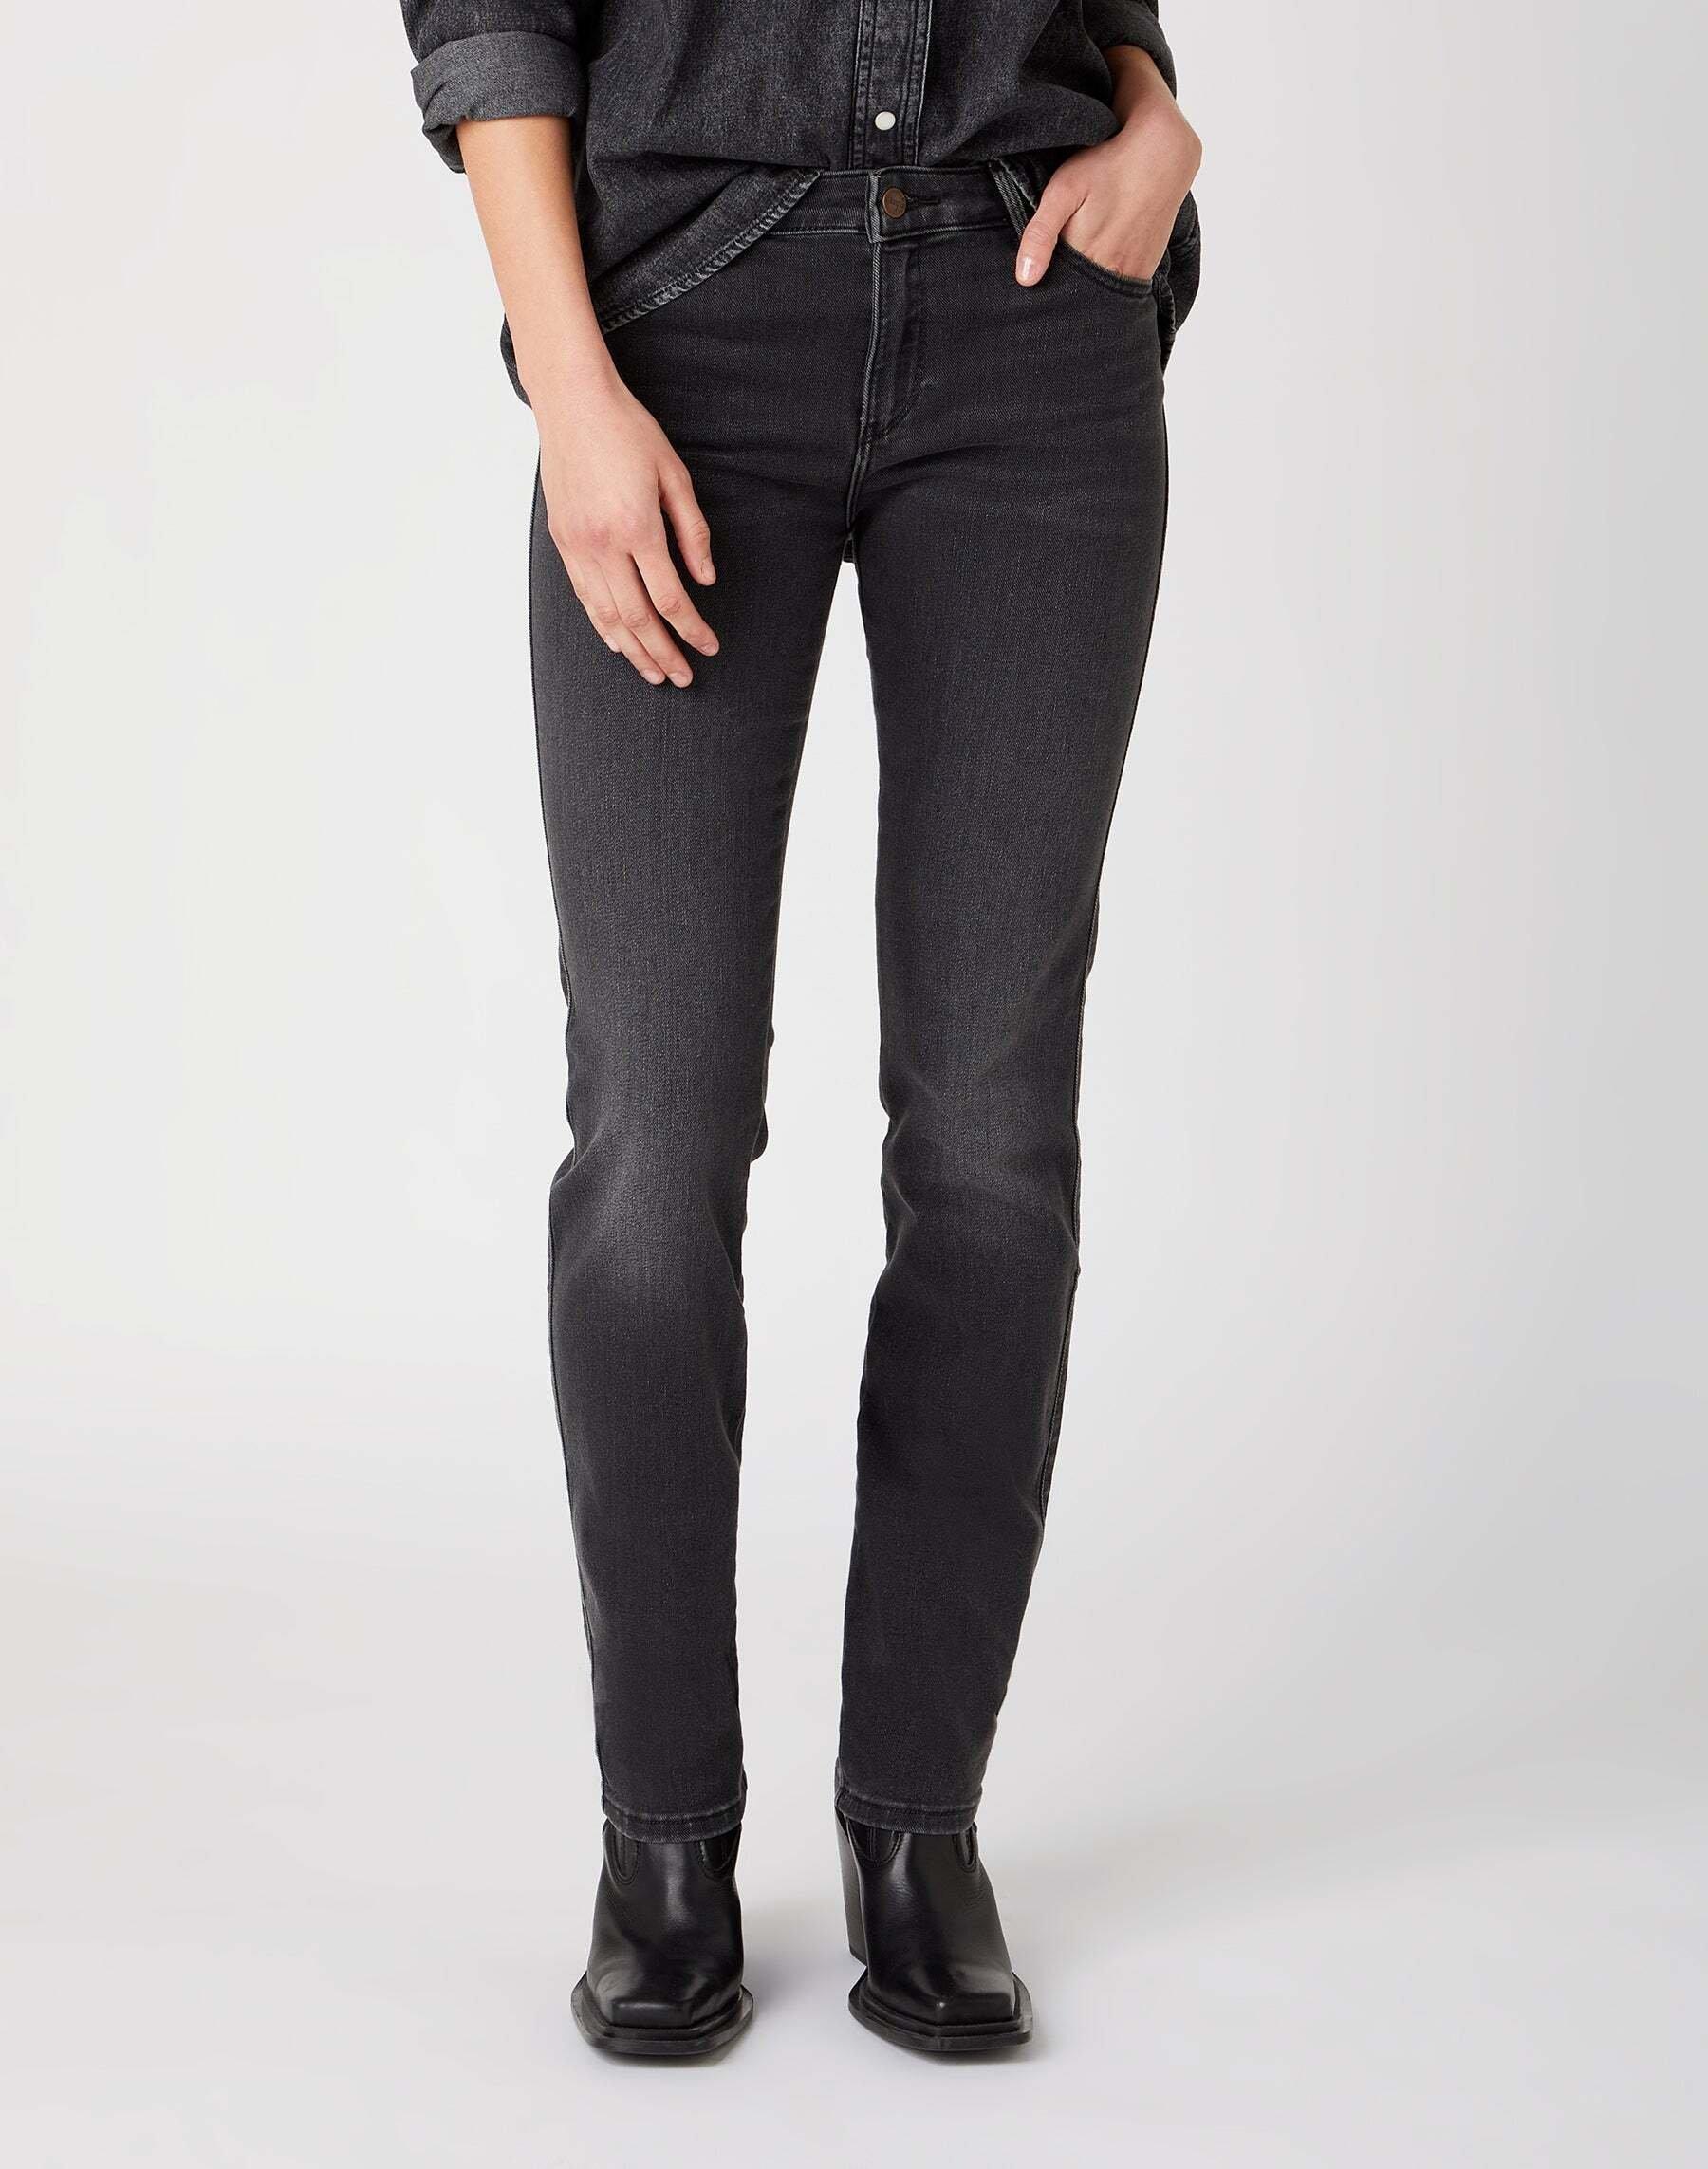 Jeans Slim Fit Slim Damen Schwarz L34/W29 von Wrangler